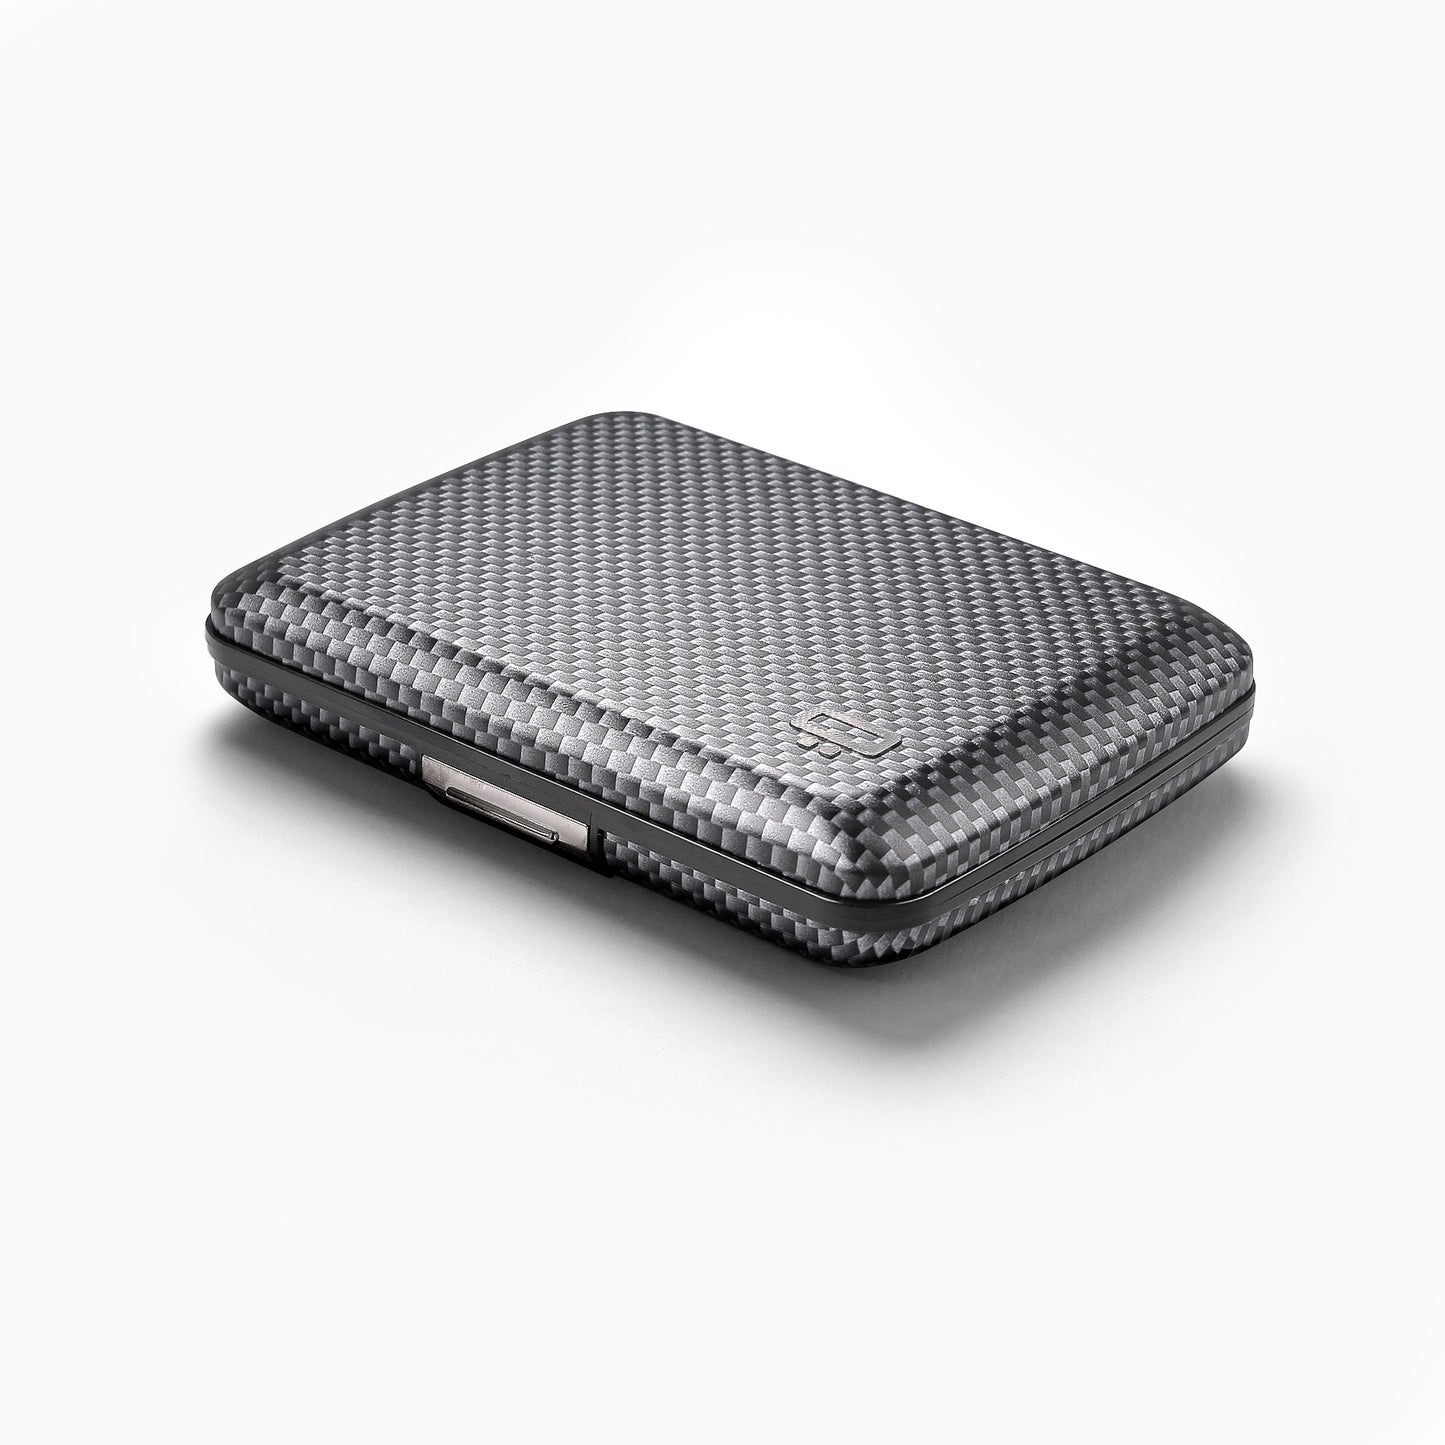 Ogon Designs Stockholm V2 Carbon Fiber RFID Blocking Wallet